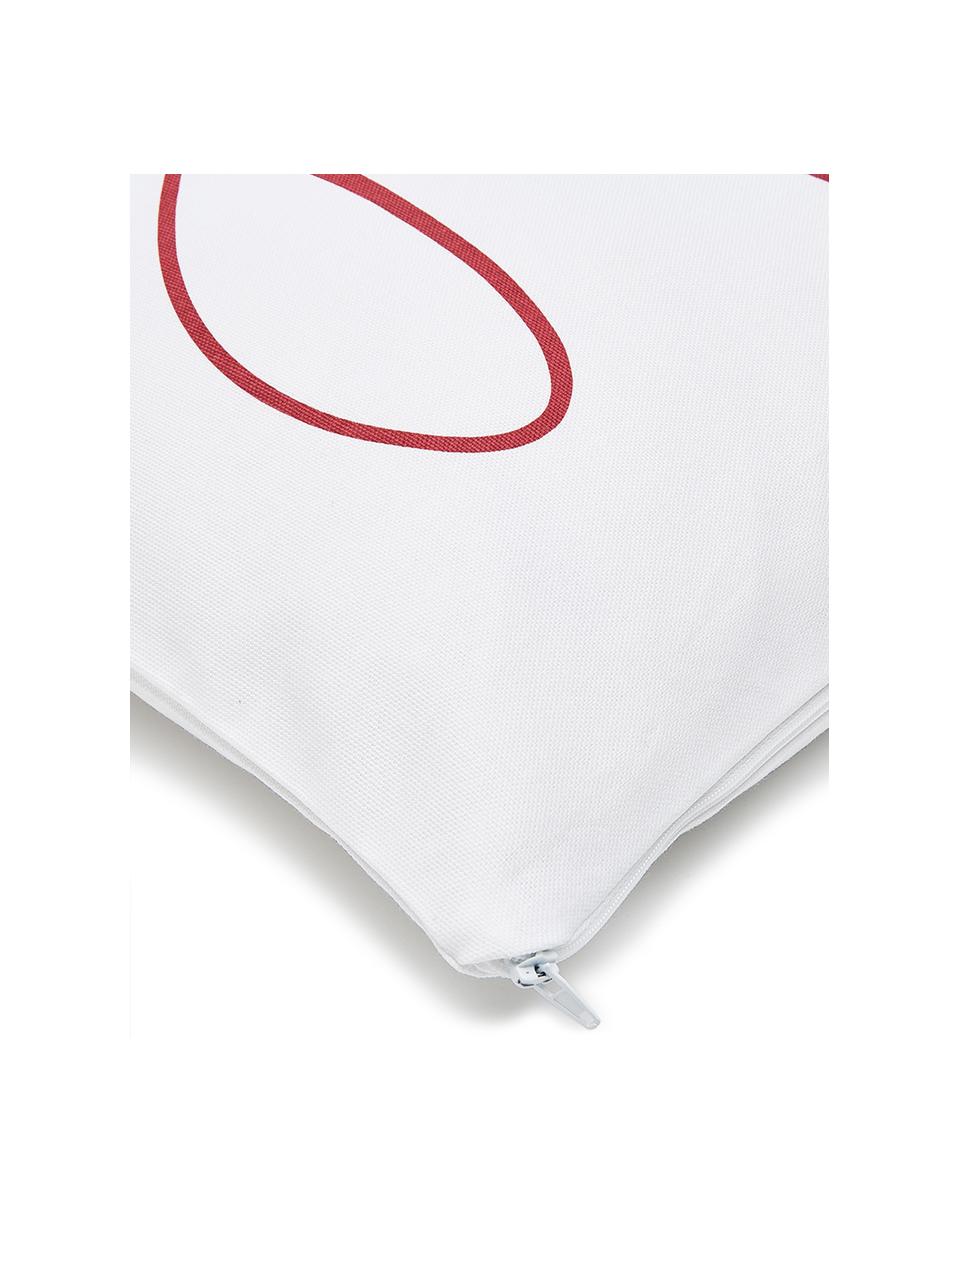 Federa arredo con scritta Joy, Cotone, Bianco, rosso, Larg. 40 x Lung. 40 cm